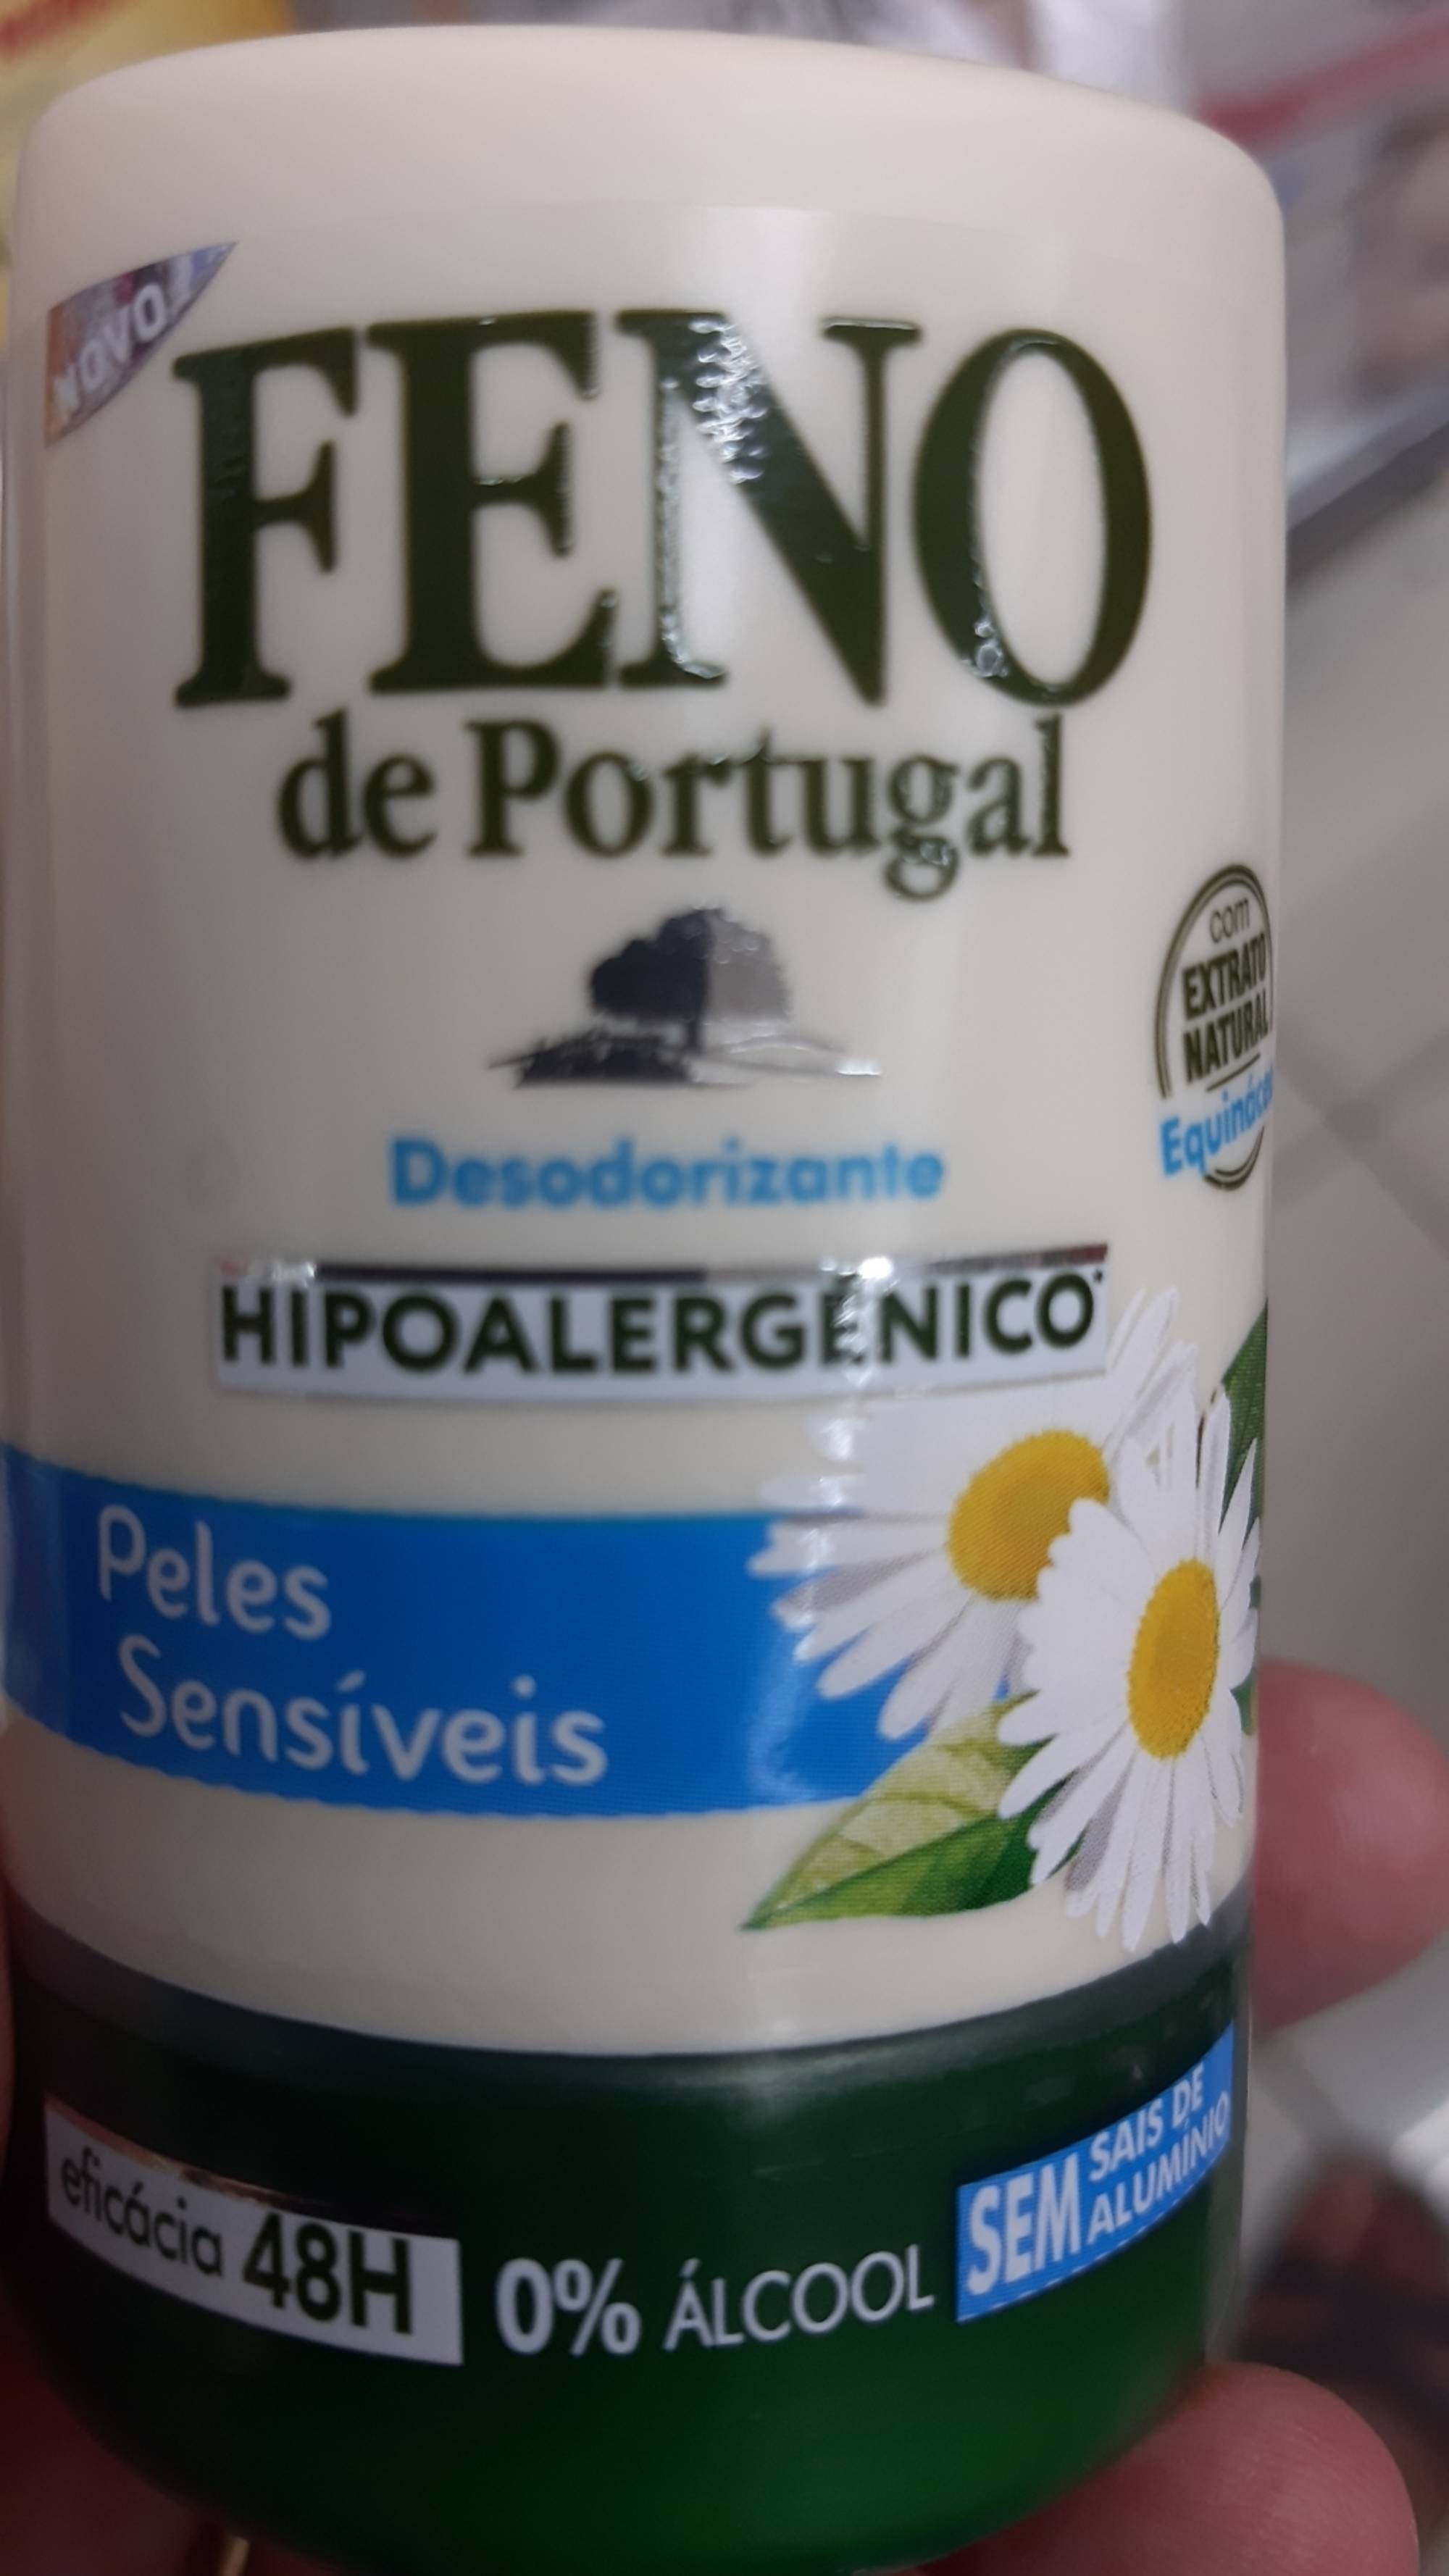 FENO DE PORTUGAL - Desodorizante hipoalergénico 48h